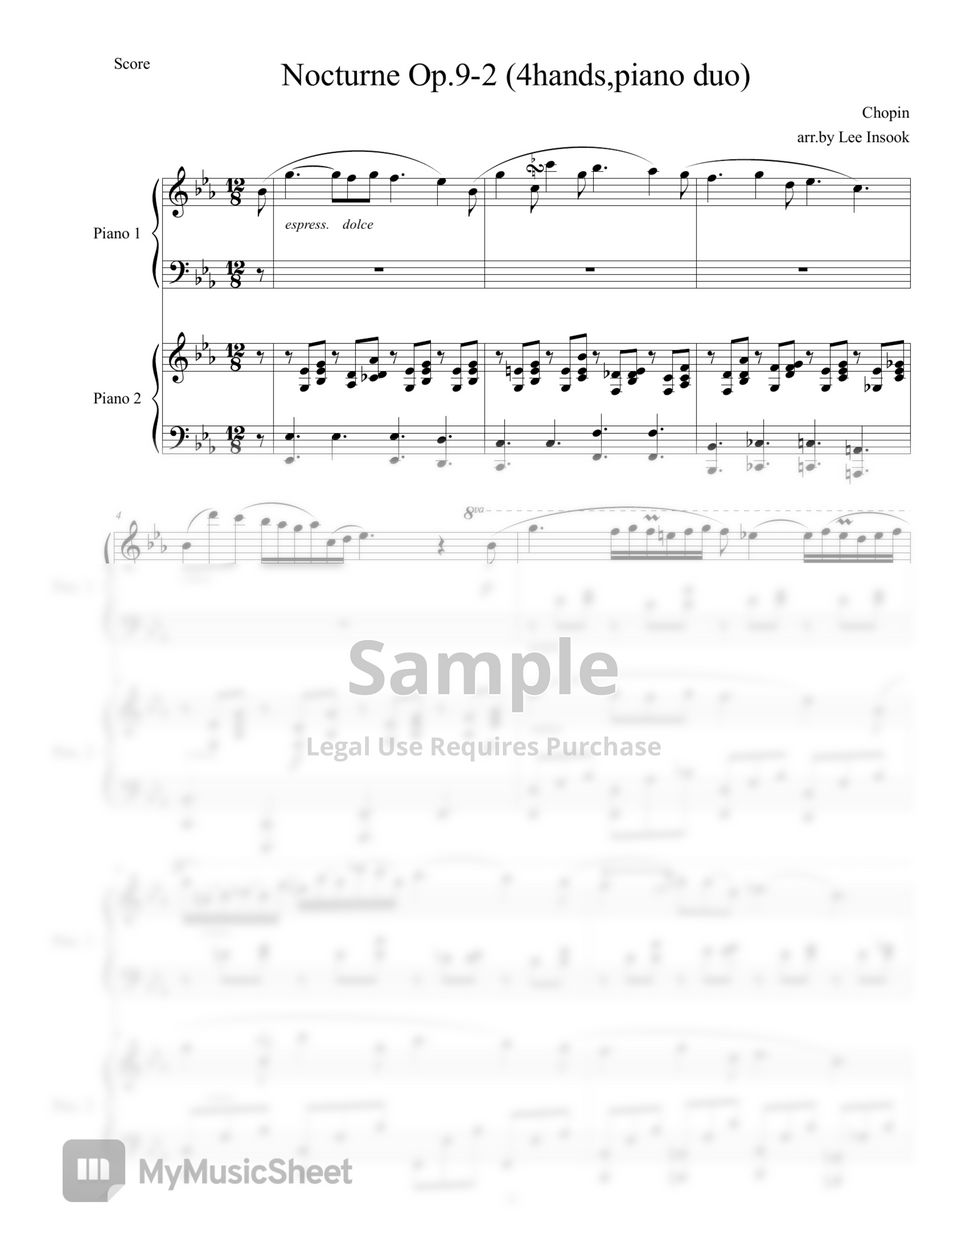 Chopin - Nocturne Op.9-2,duo